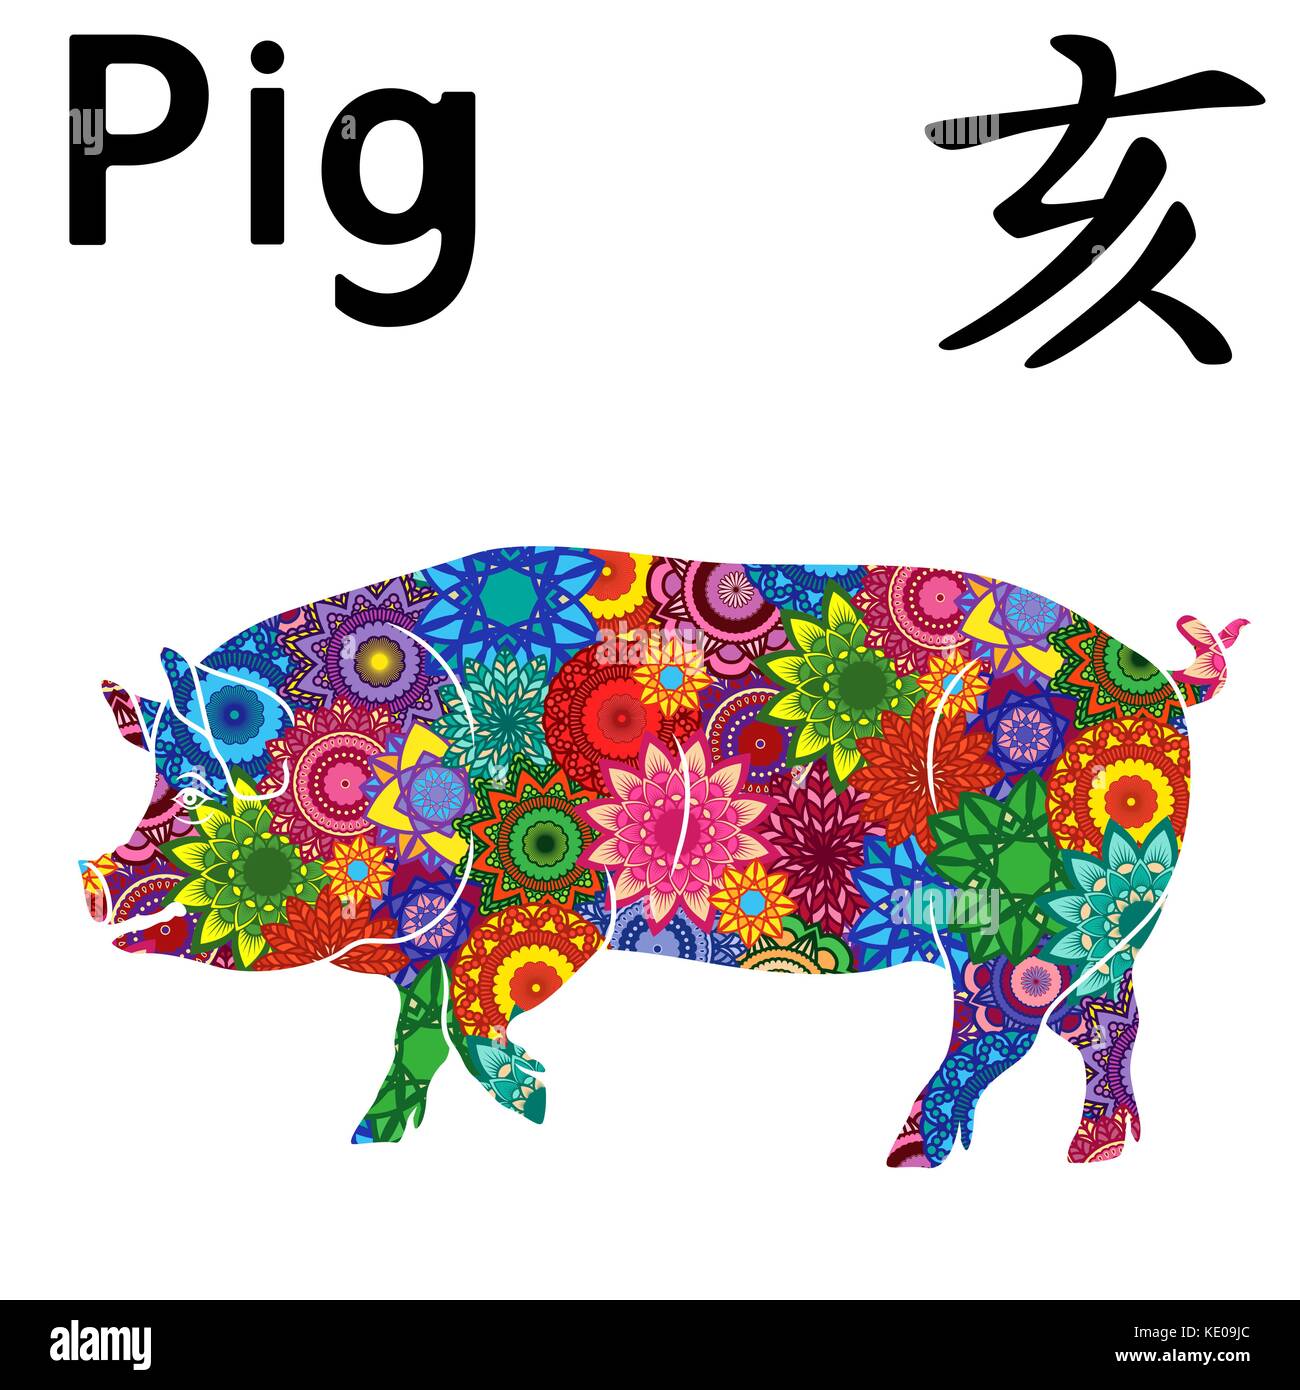 Big Pig, Cinese segno zodiacale, elemento fisso acqua, simbolo del nuovo anno sul calendario Orientale, disegnato a mano stencil vettore con colore fiori stilizzati i Illustrazione Vettoriale